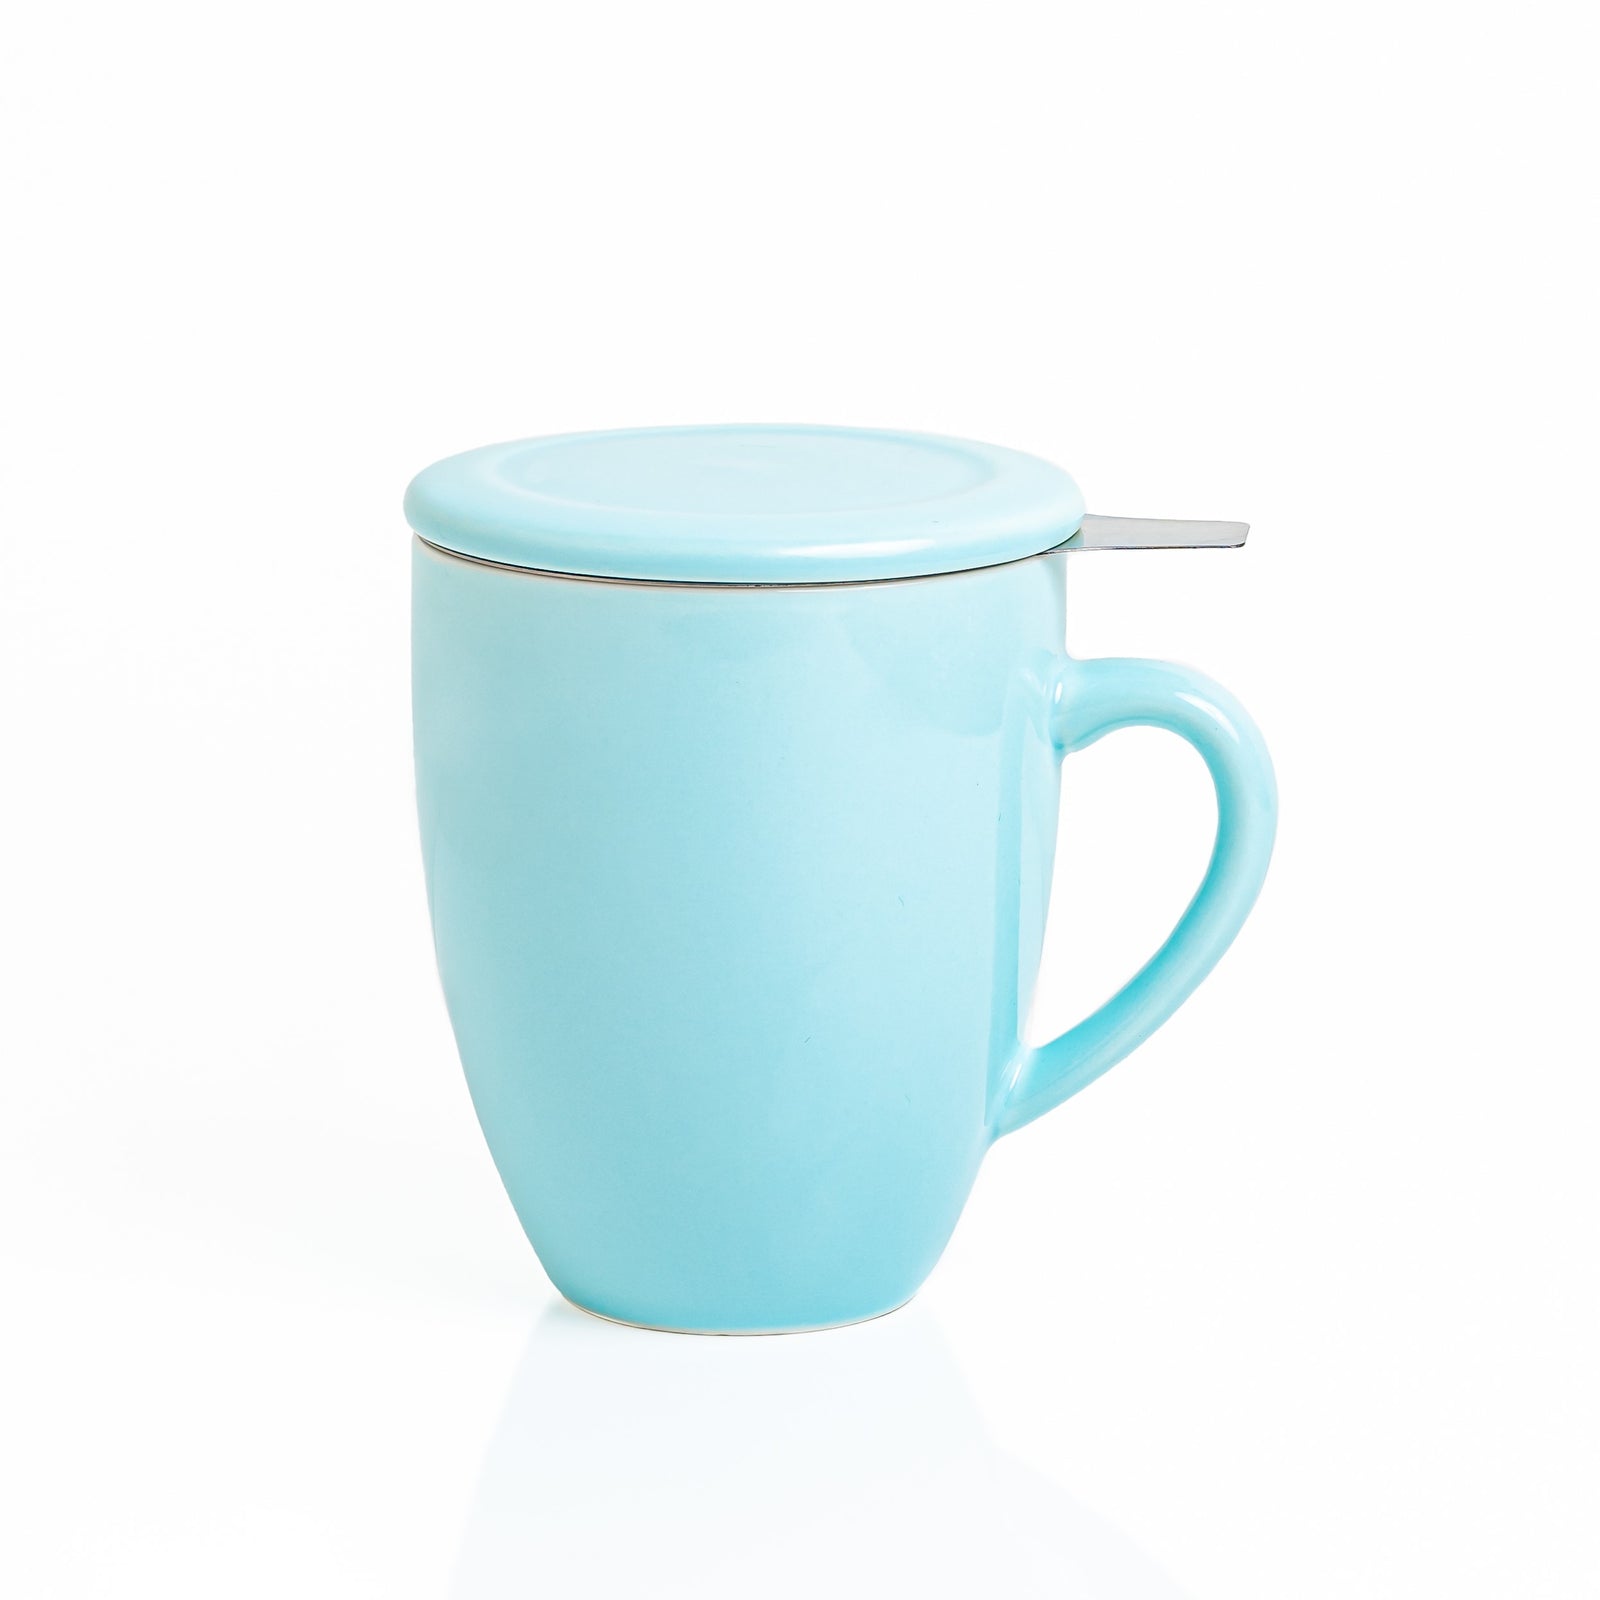 Artisan Ceramic Tea Mug, Blue - 300ml